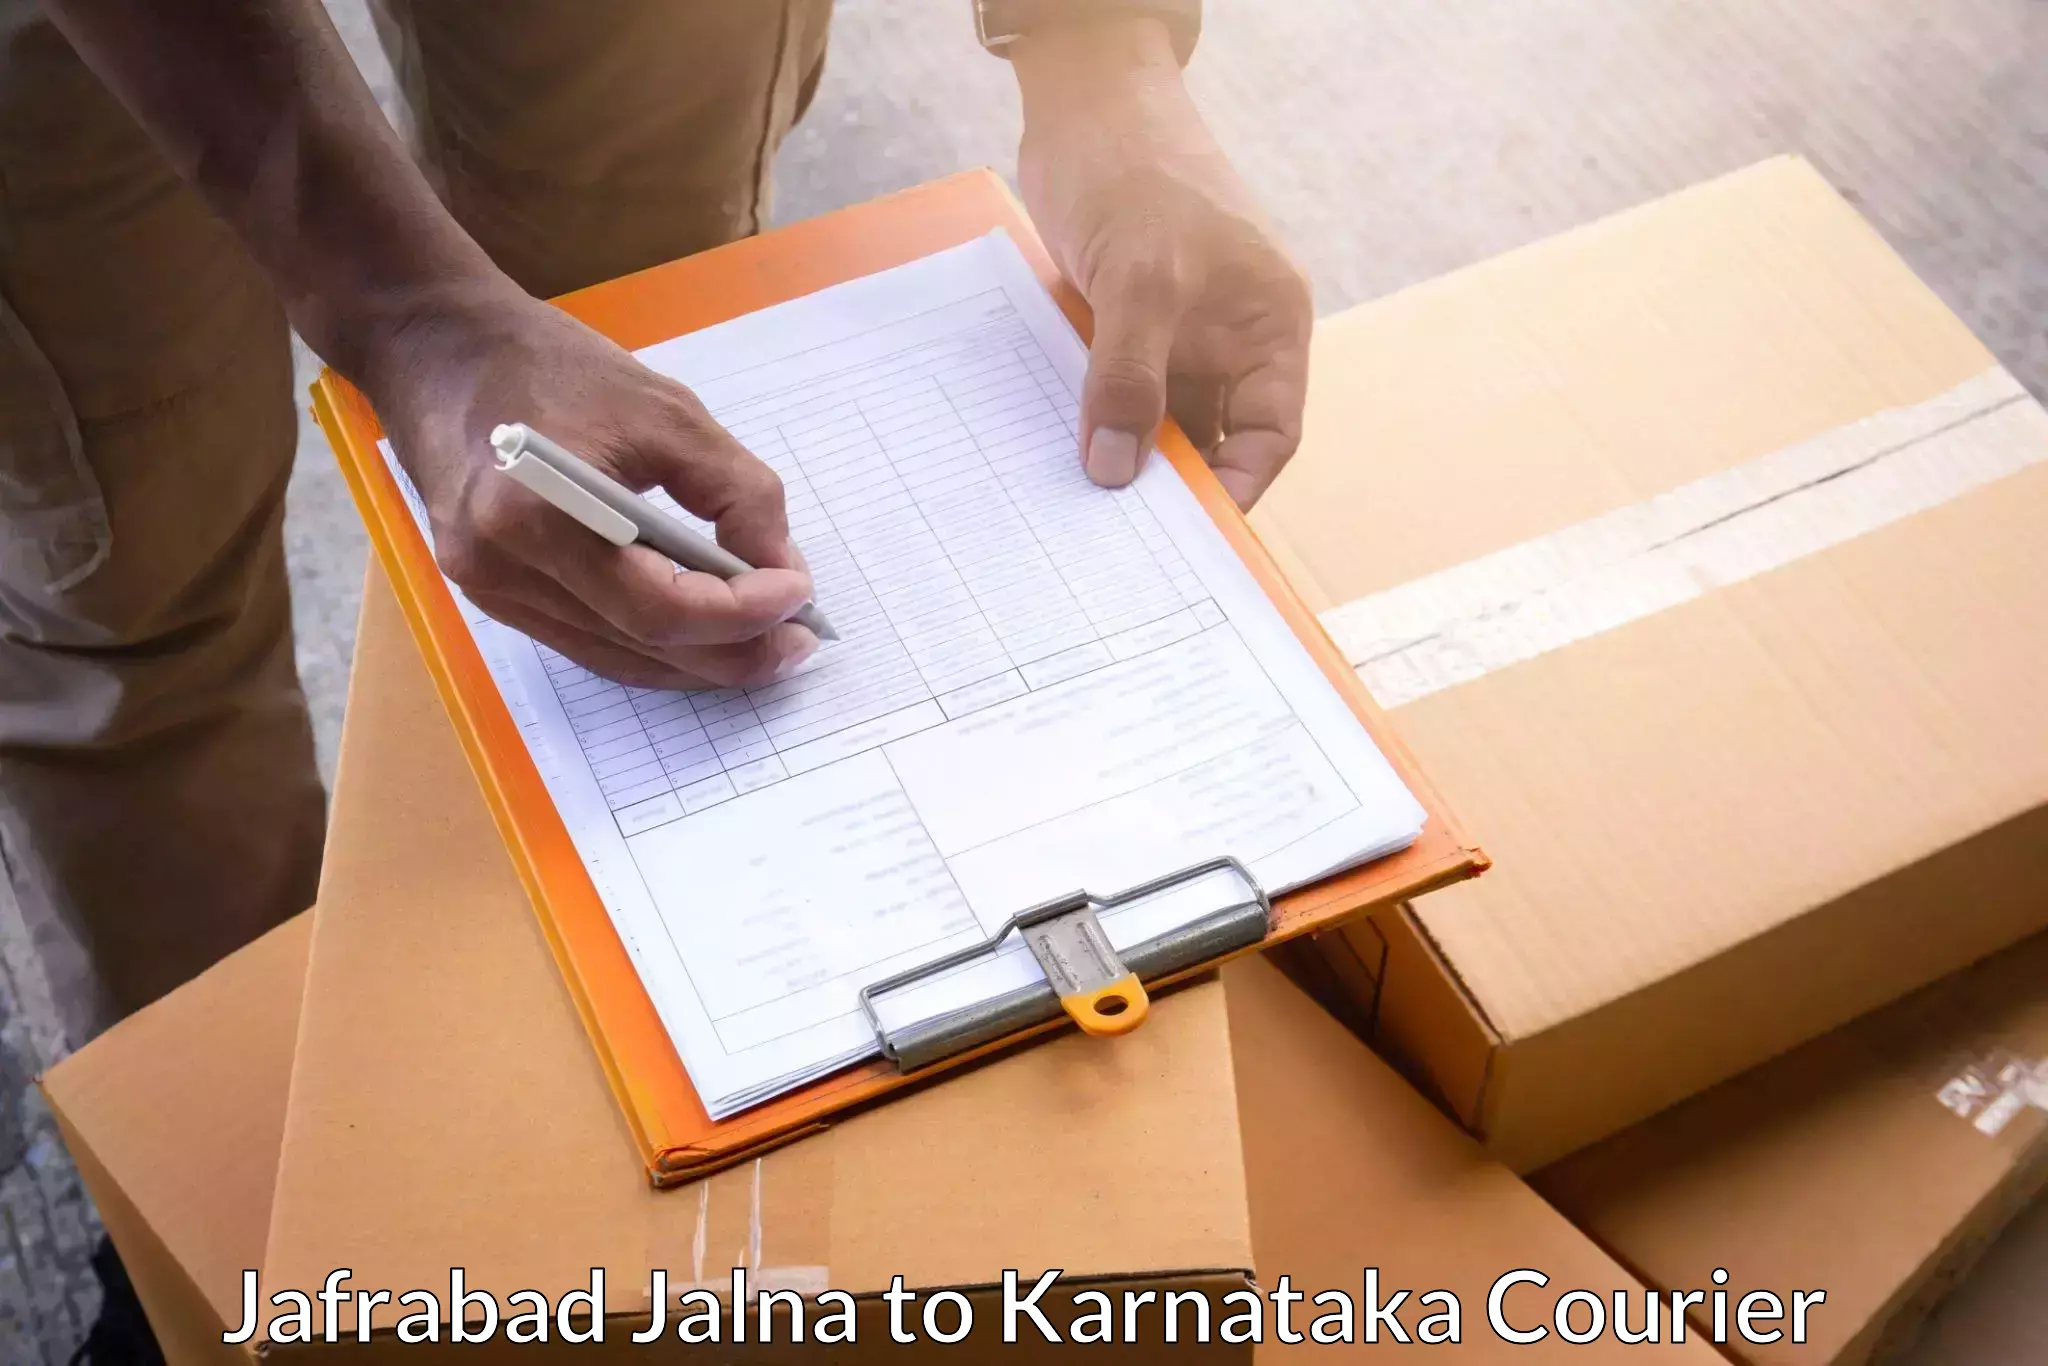 Lightweight parcel options Jafrabad Jalna to Hospet